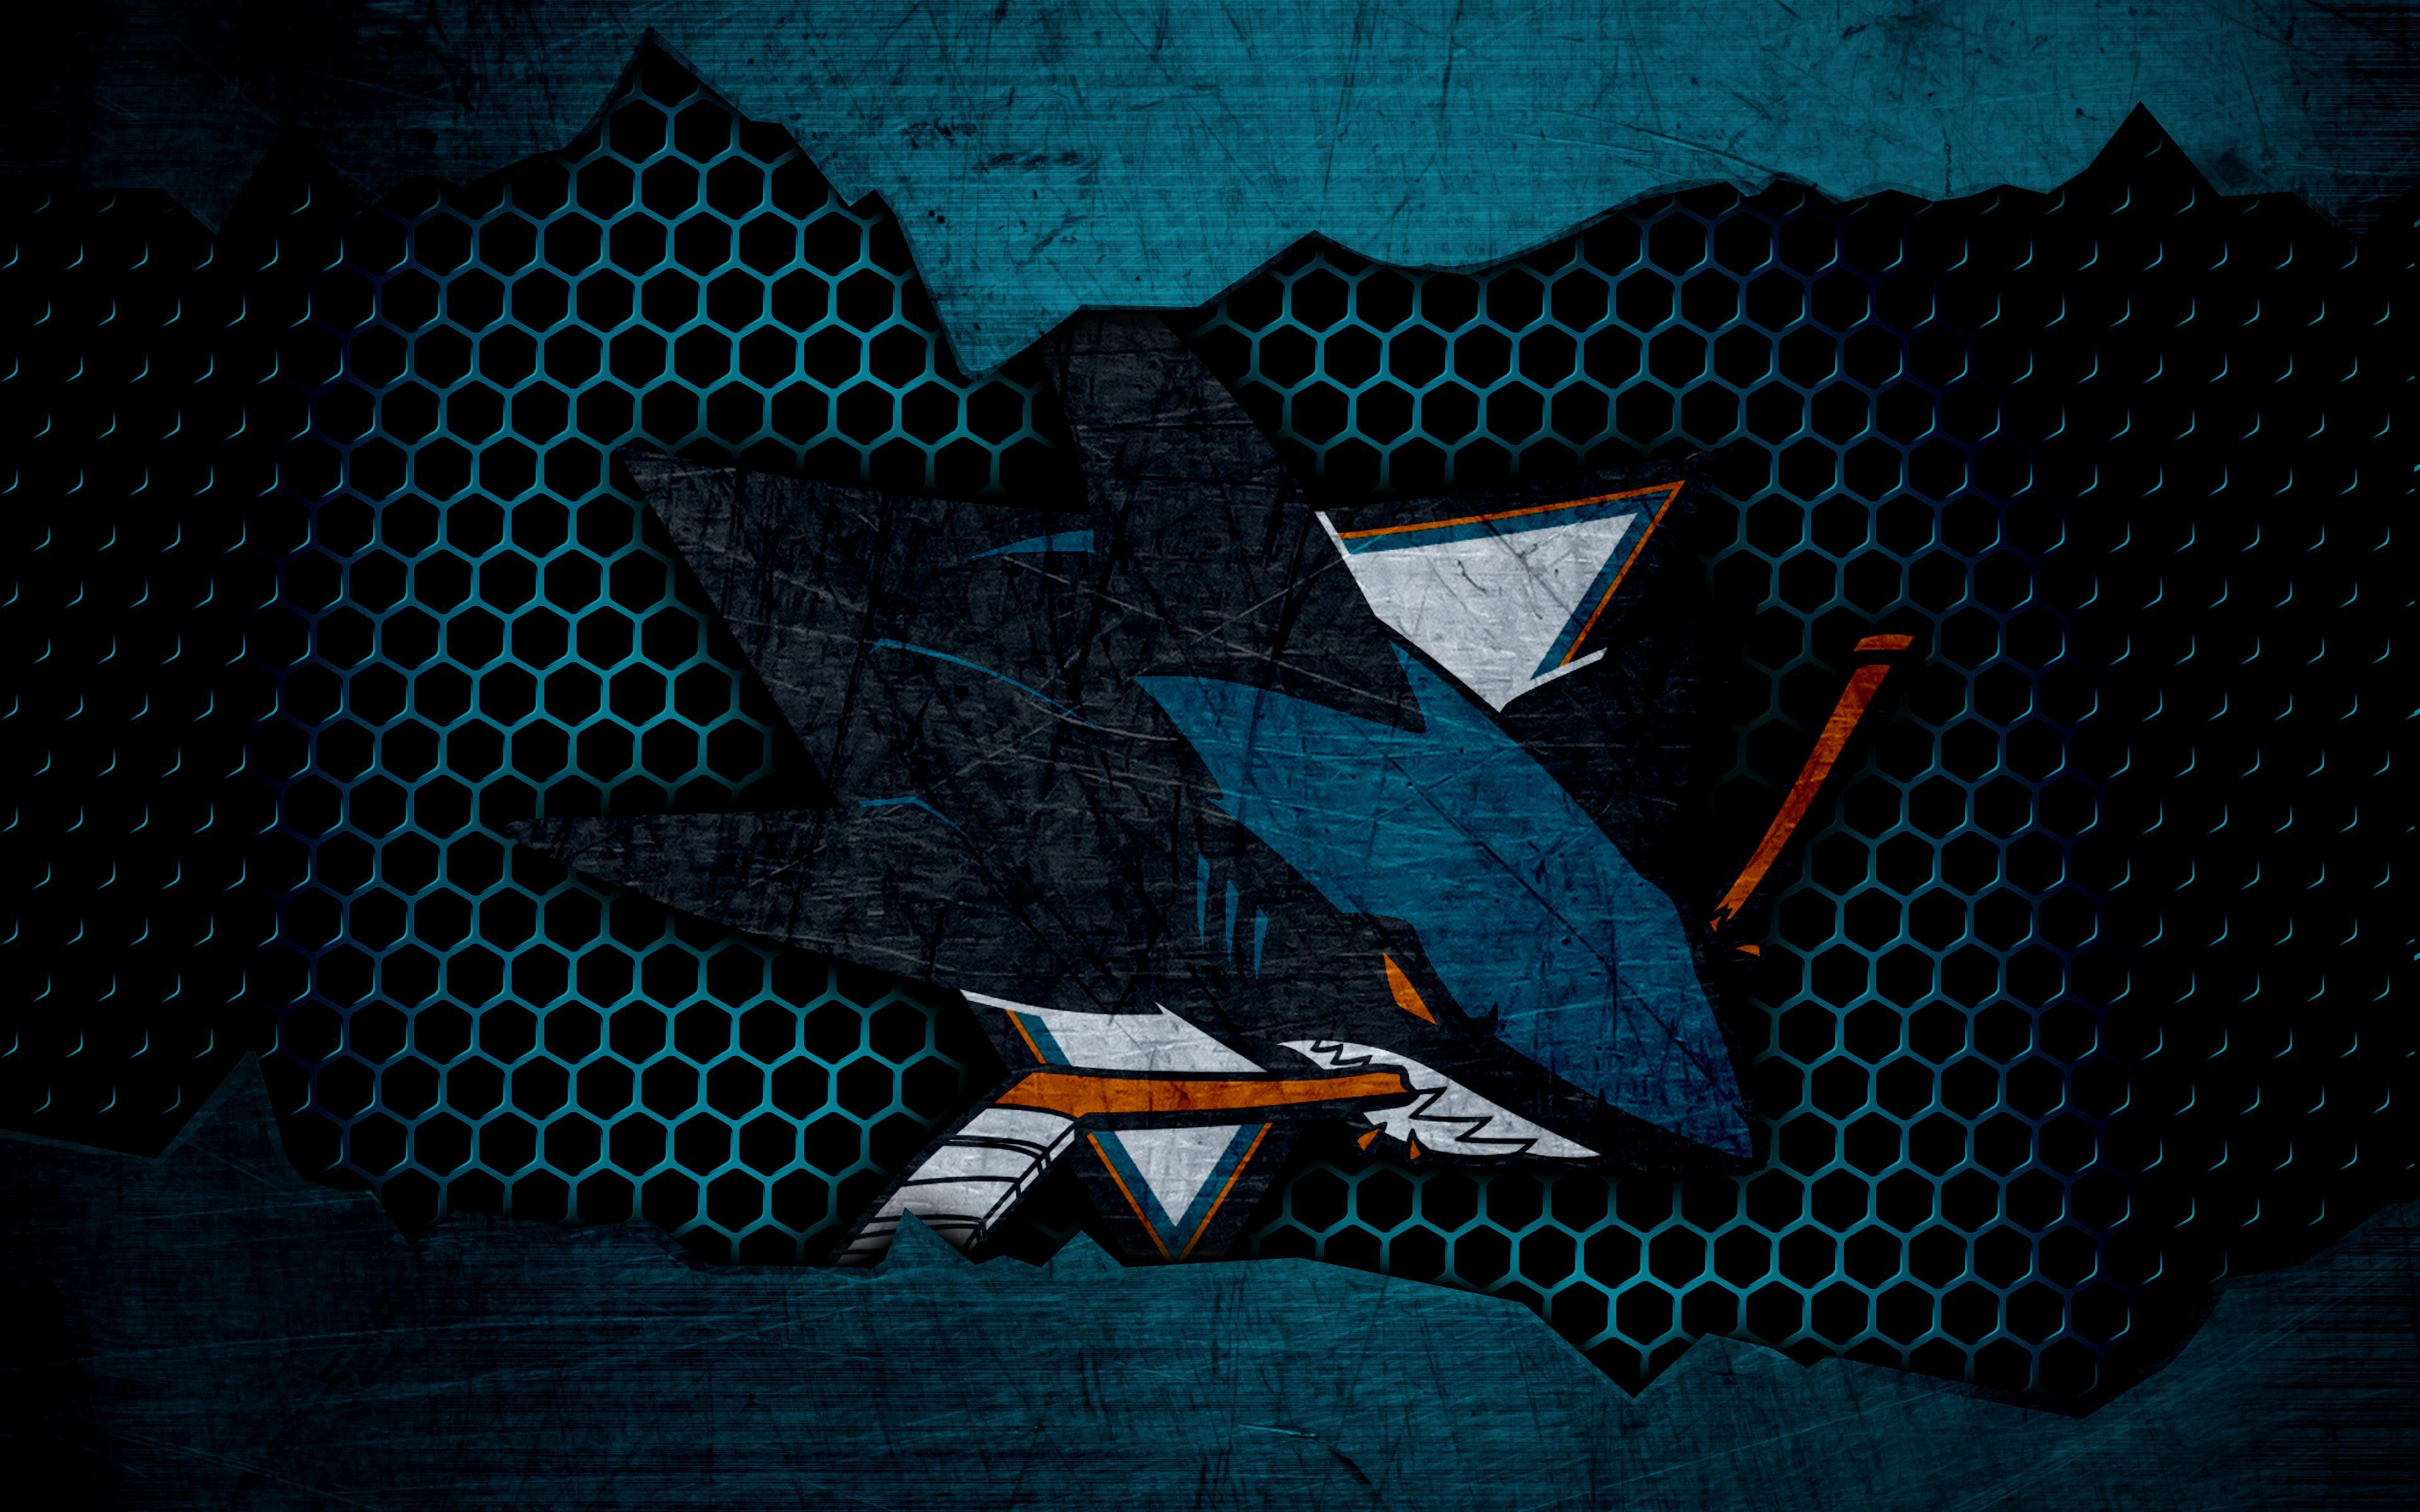 NHL, Emblem, Logo, San Jose Sharks wallpaper and background